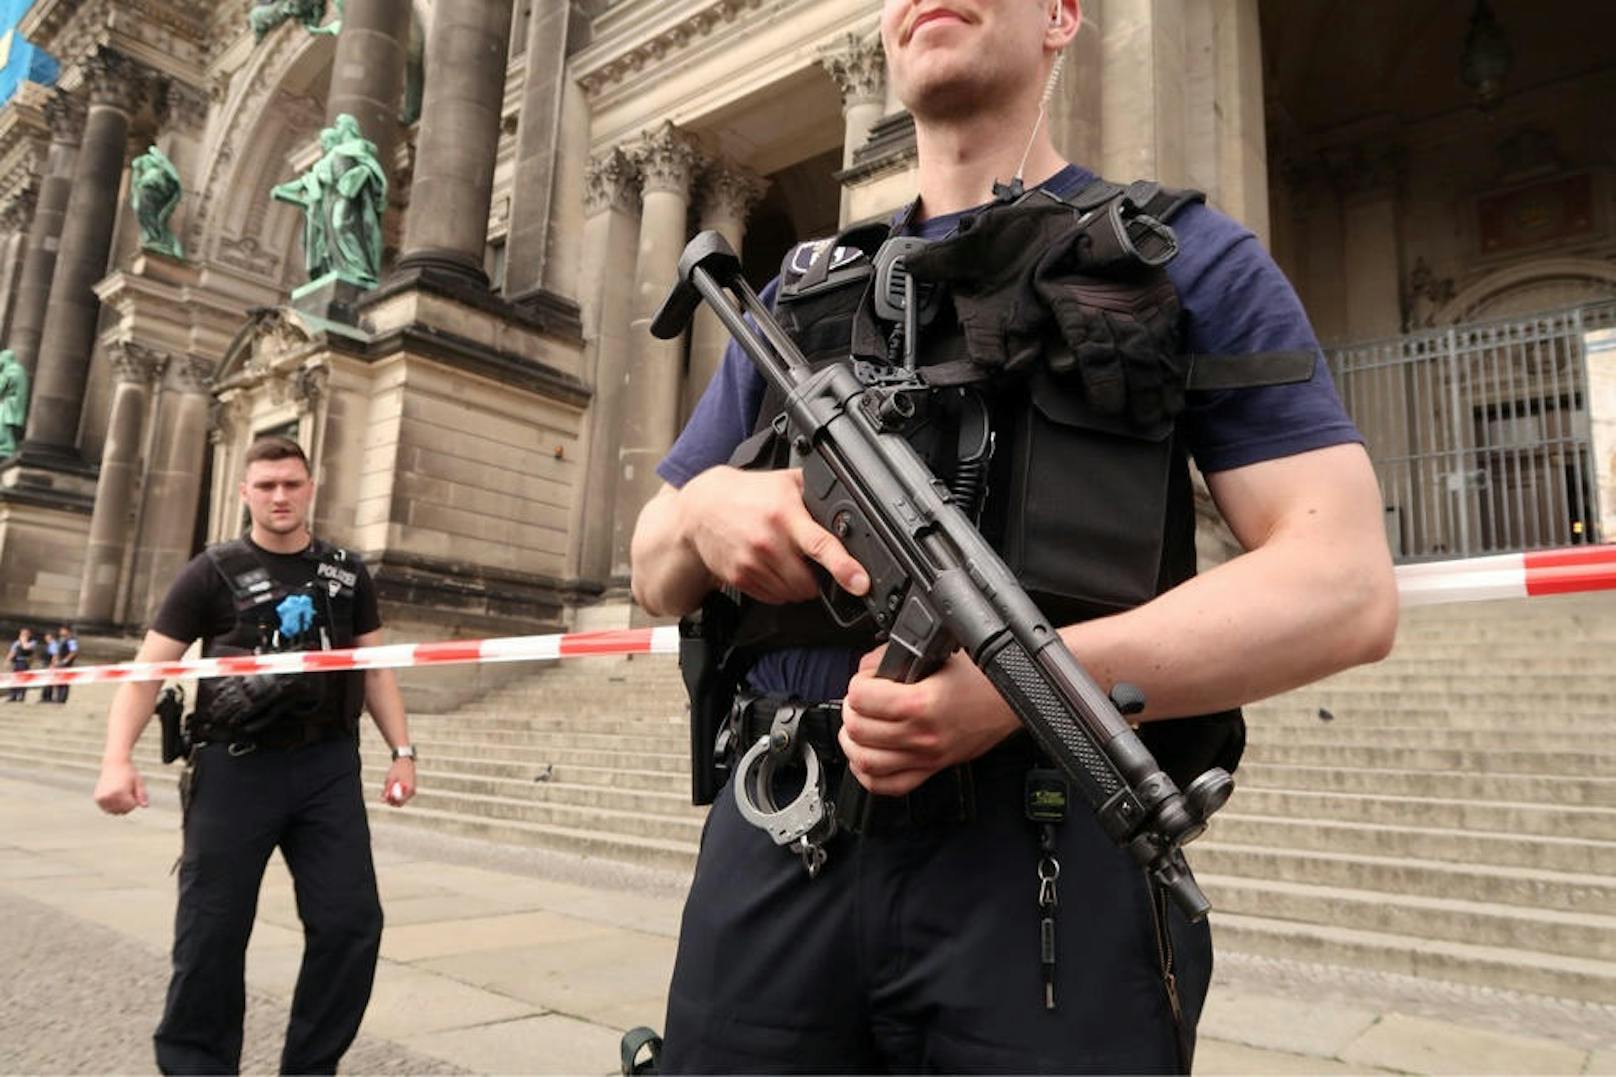 Ein Österreicher hat am Wochenende mit einem Messer im Berliner Dom randaliert.